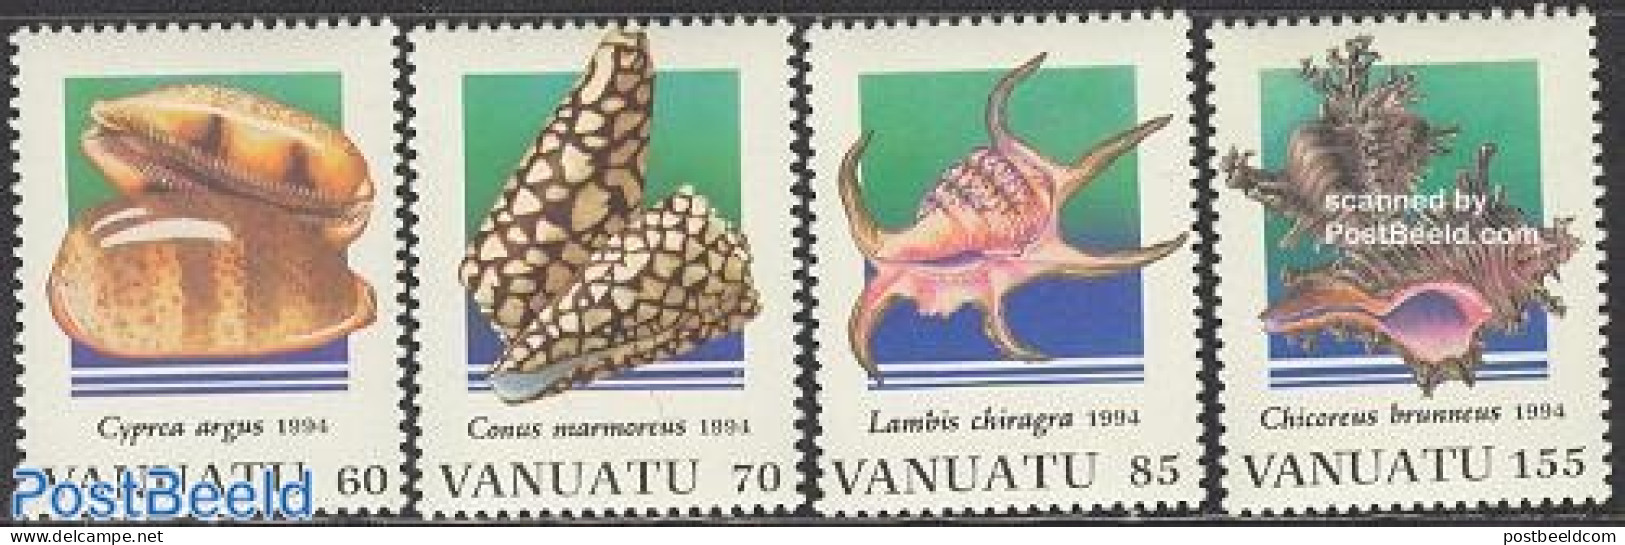 Vanuatu 1994 Shells 4v, Mint NH, Nature - Shells & Crustaceans - Marine Life